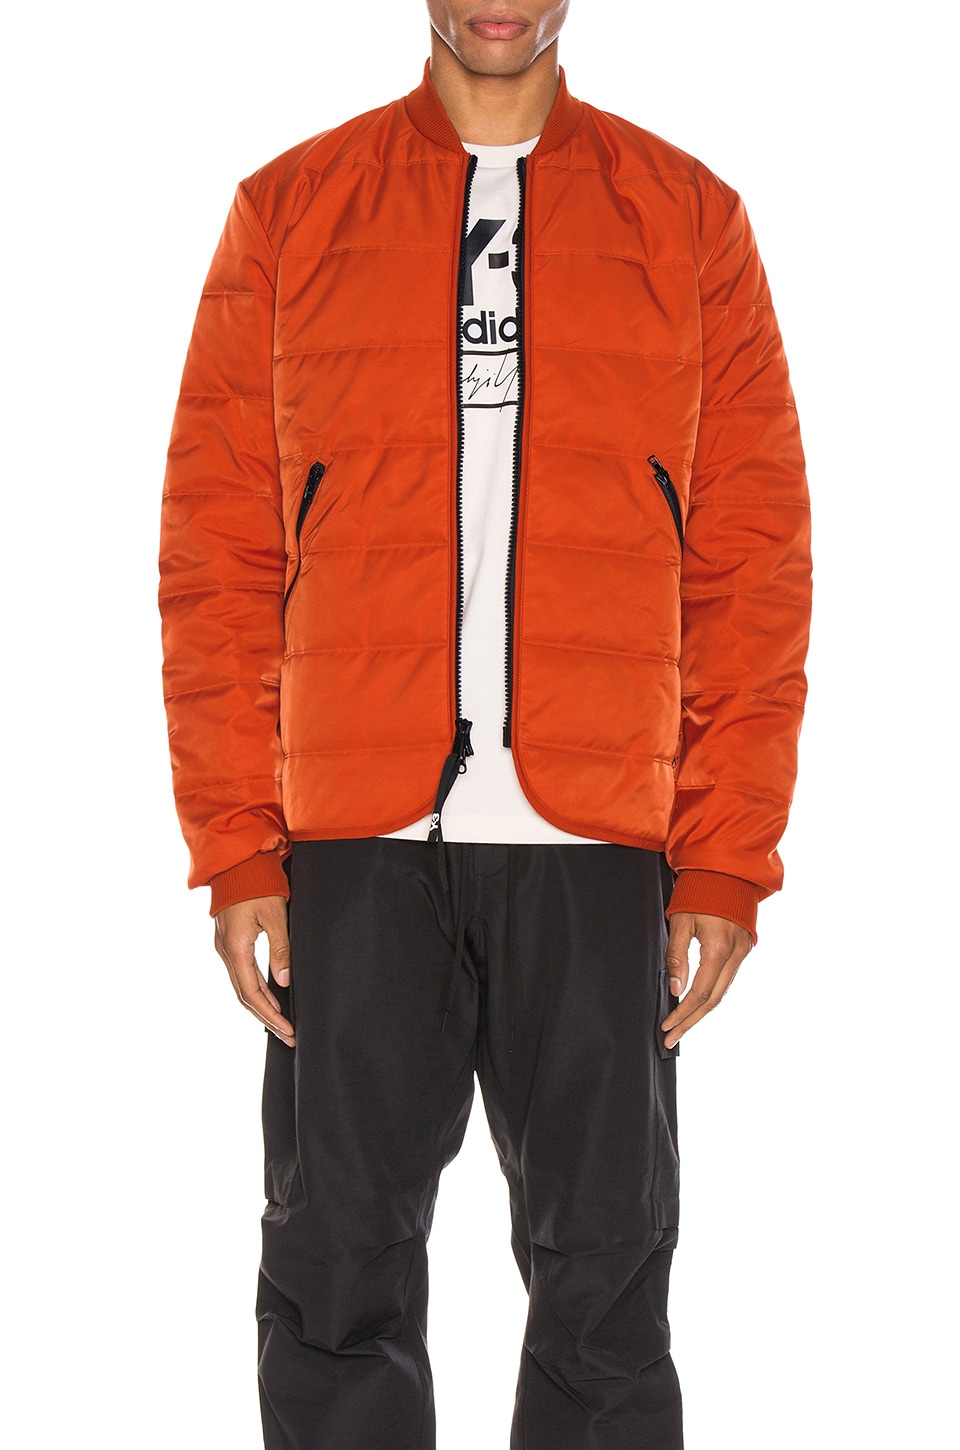 y3 orange jacket